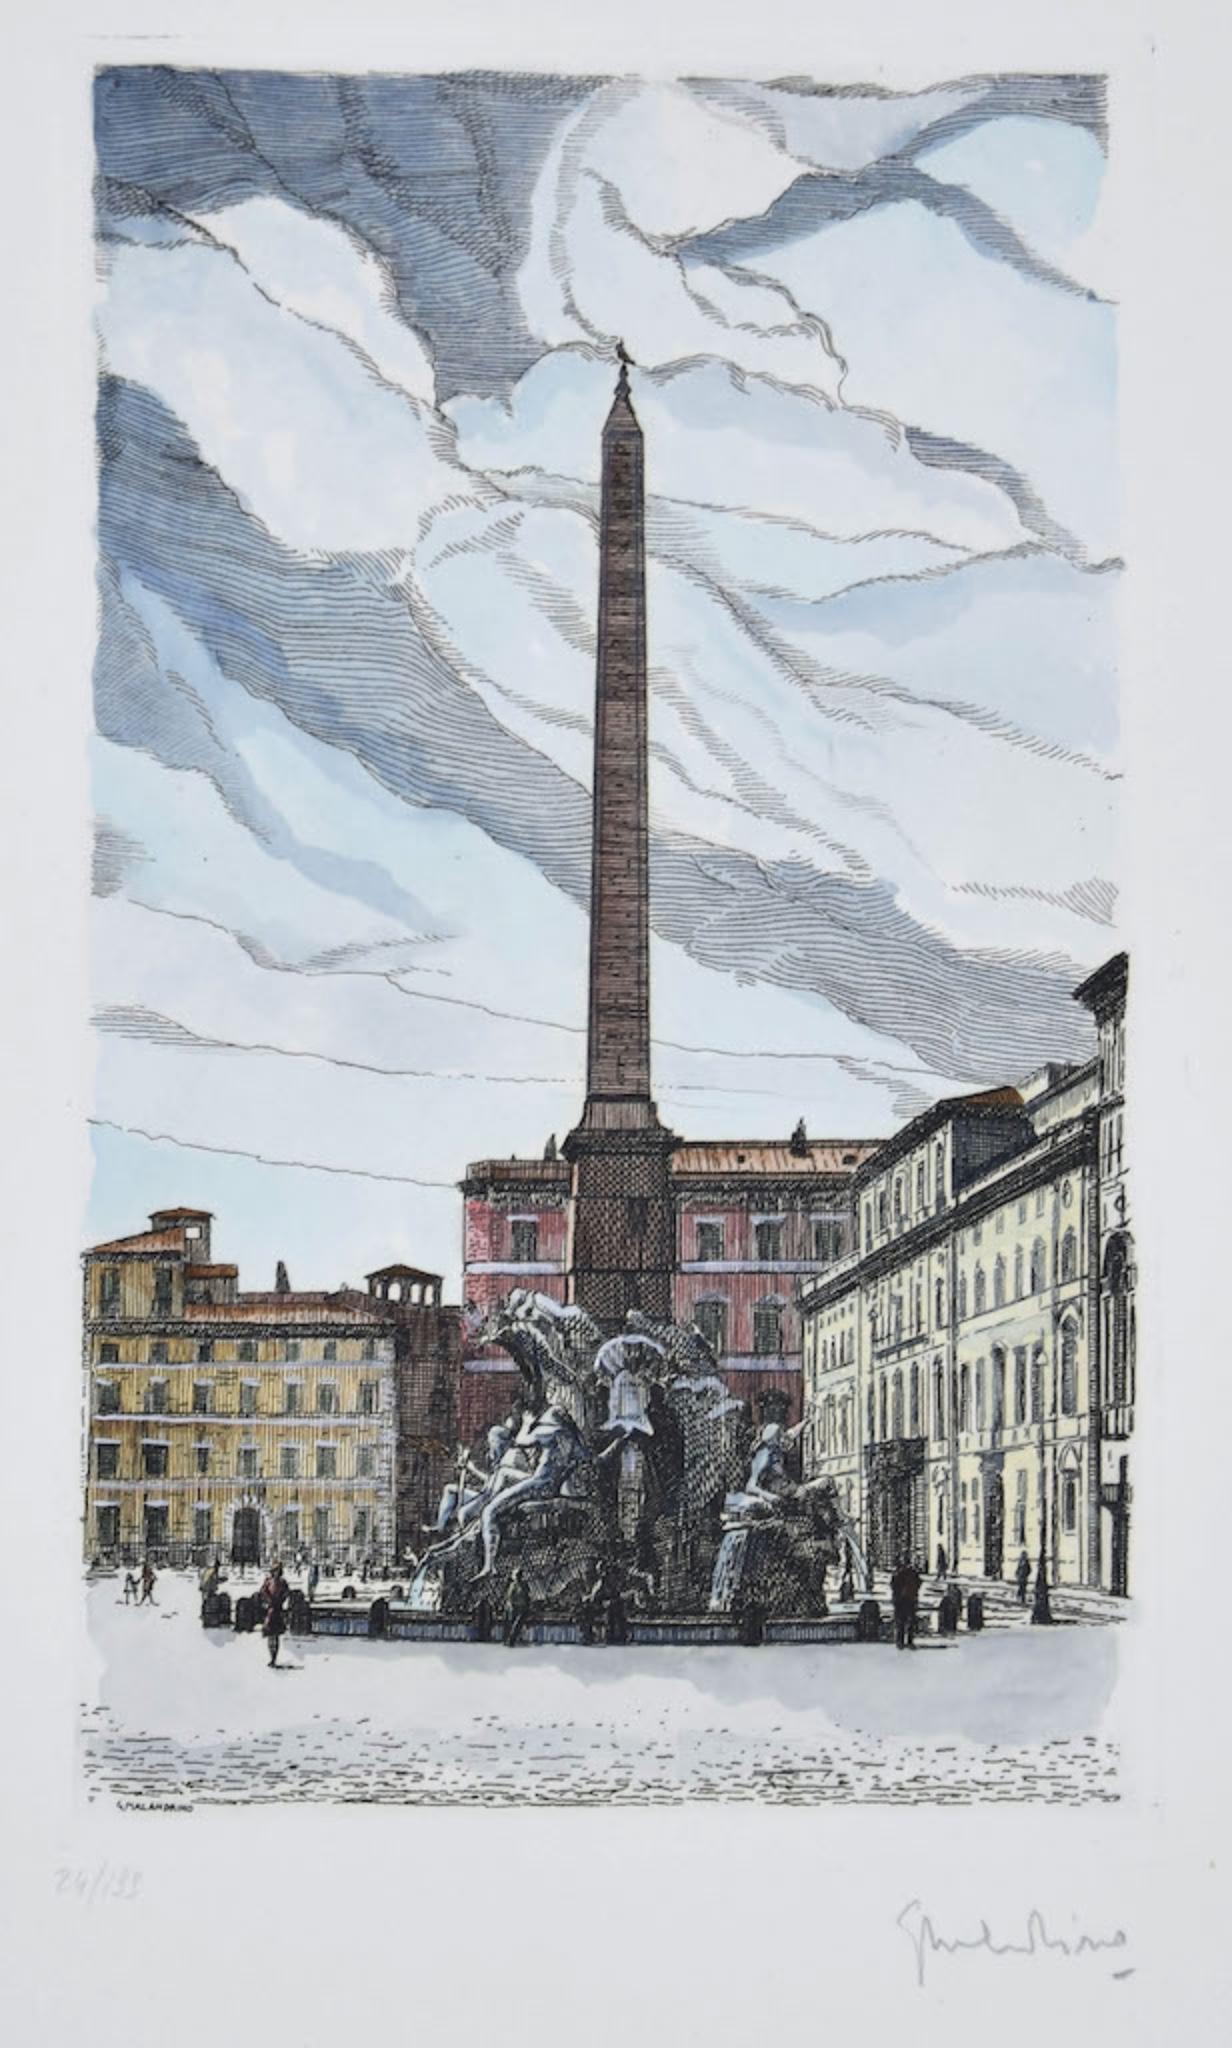 Navona Square - Rom ist ein Originalkunstwerk von Giuseppe Malandrino.

Originaldruck in Ätztechnik. Bildabmessungen: 29 x 18 cm

Vom Künstler in der rechten unteren Ecke mit Bleistift handsigniert. In der linken unteren Ecke nummeriert. Ausgabe